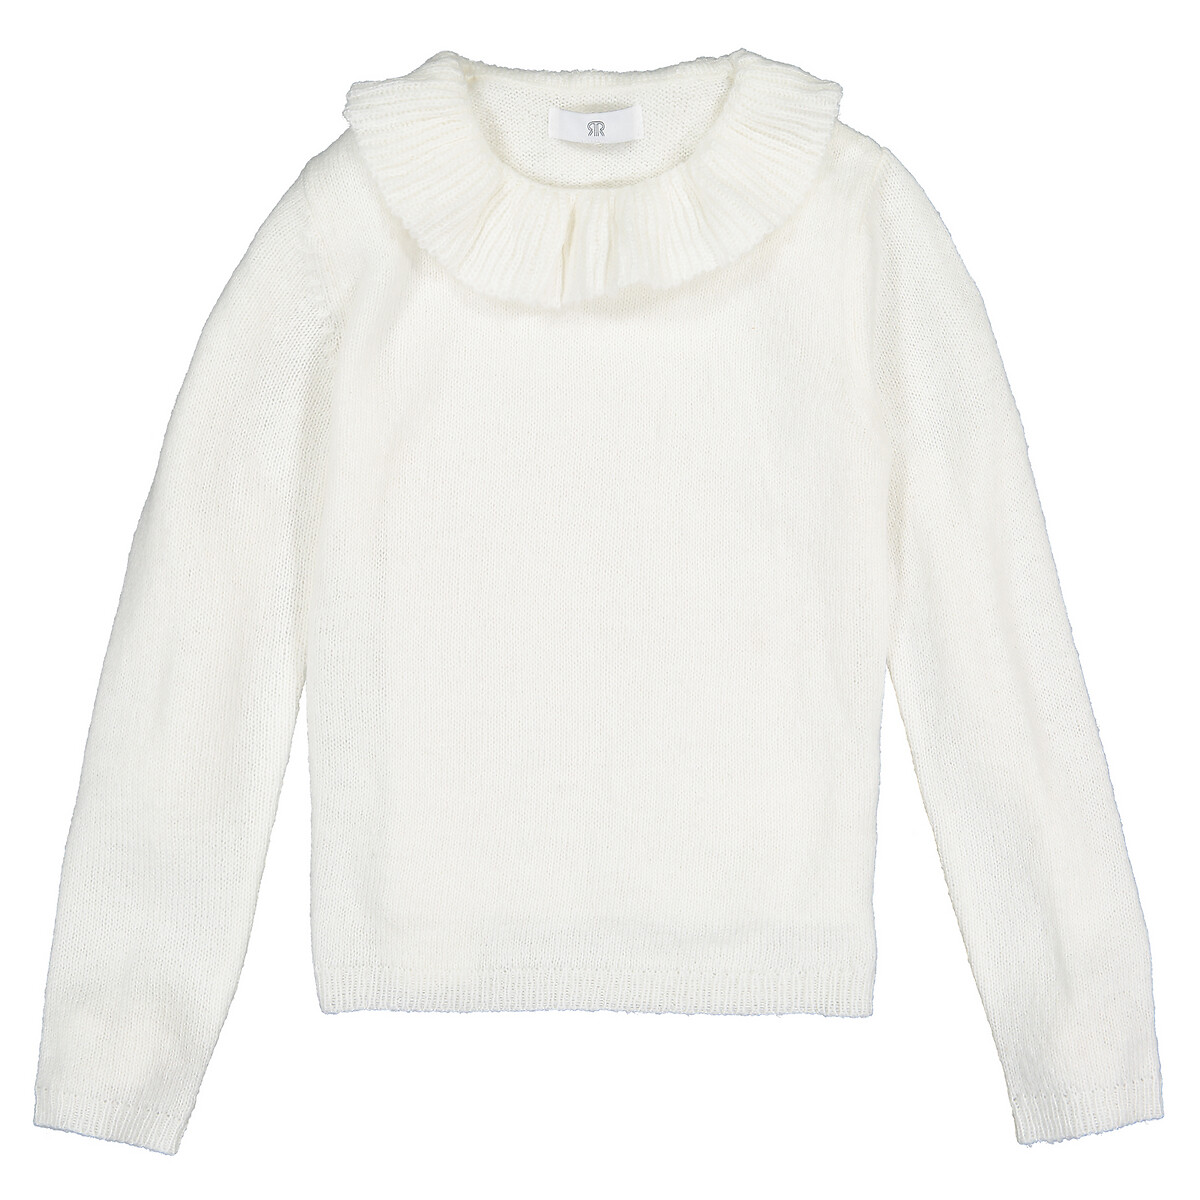 Пуловер La Redoute С круглым вырезом с воланами из тонкого трикотажа  4 года - 102 см бежевый, размер 4 года - 102 см - фото 2